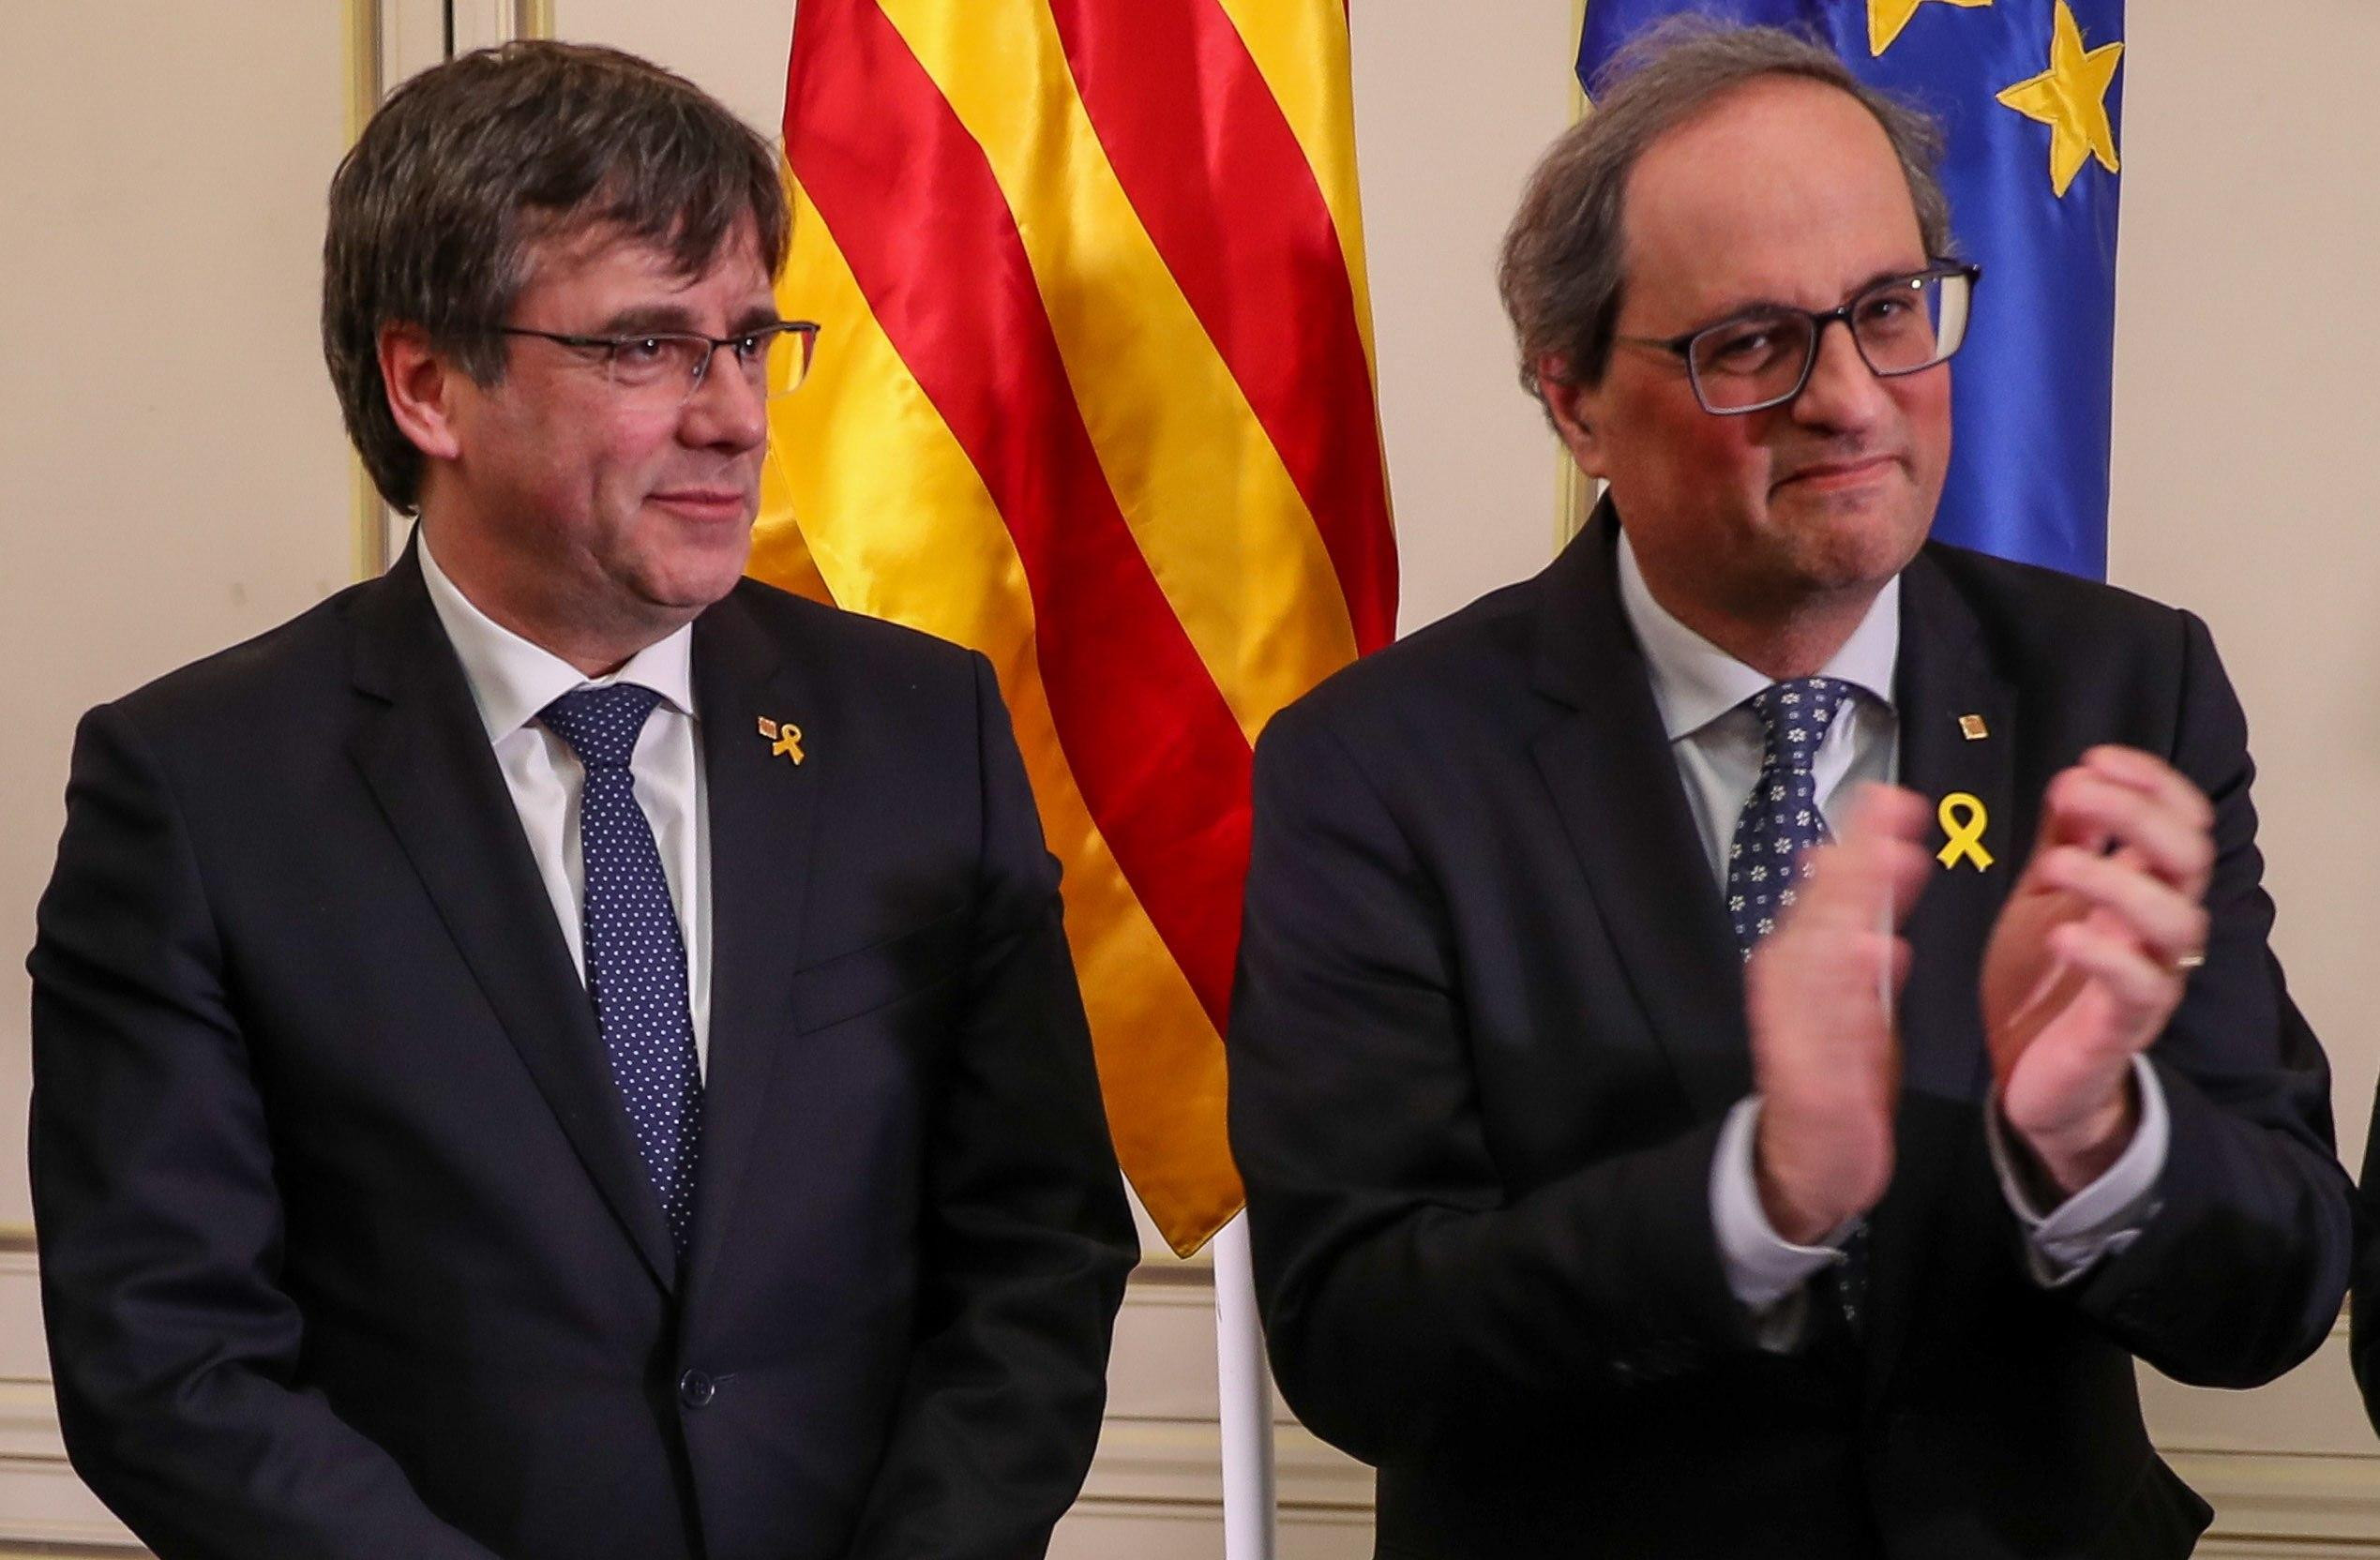 Puigdemont y Torra, dos de los dirigentes del independentismo, durante su charla sobre lo que llaman república en un hotel belga. Imagen del artículo 'por el bien de los indepes' y 'Vais muy sobrados, merluzos'. Imagen del artículo 'Sin temor, sin traicio